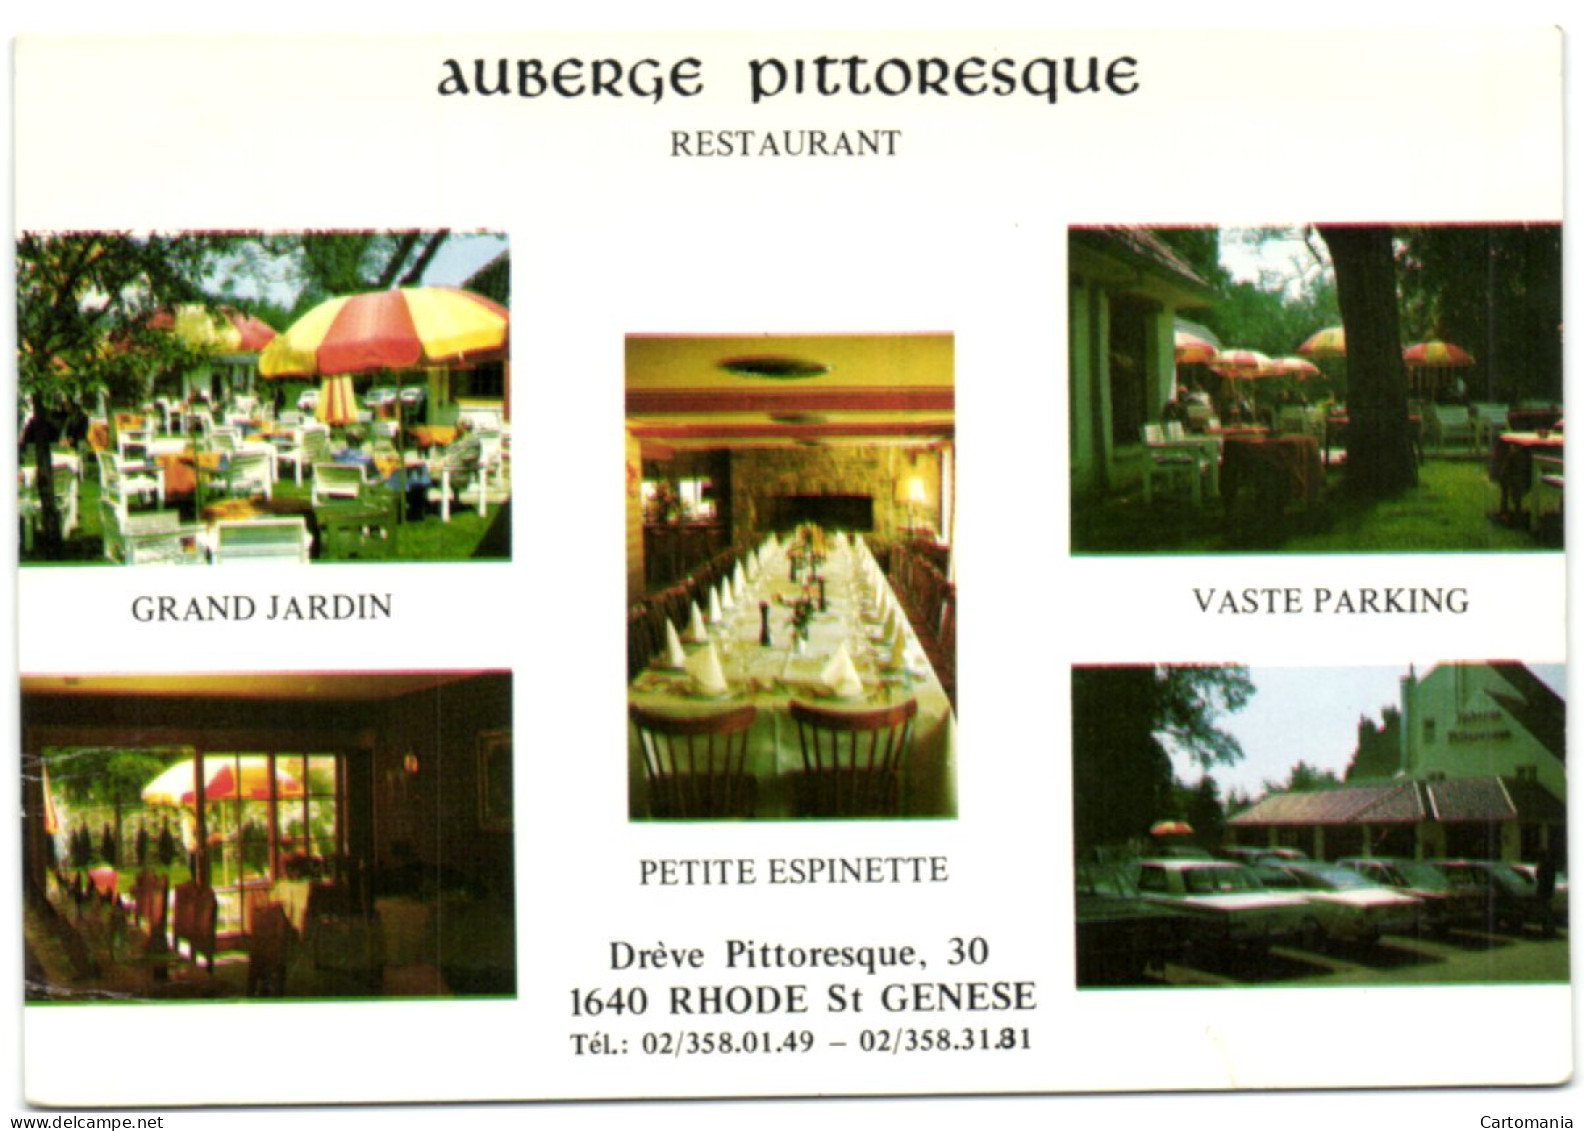 Rhode St Genèse - Auberge Pittoresque - Restaurant - Rhode-St-Genèse - St-Genesius-Rode